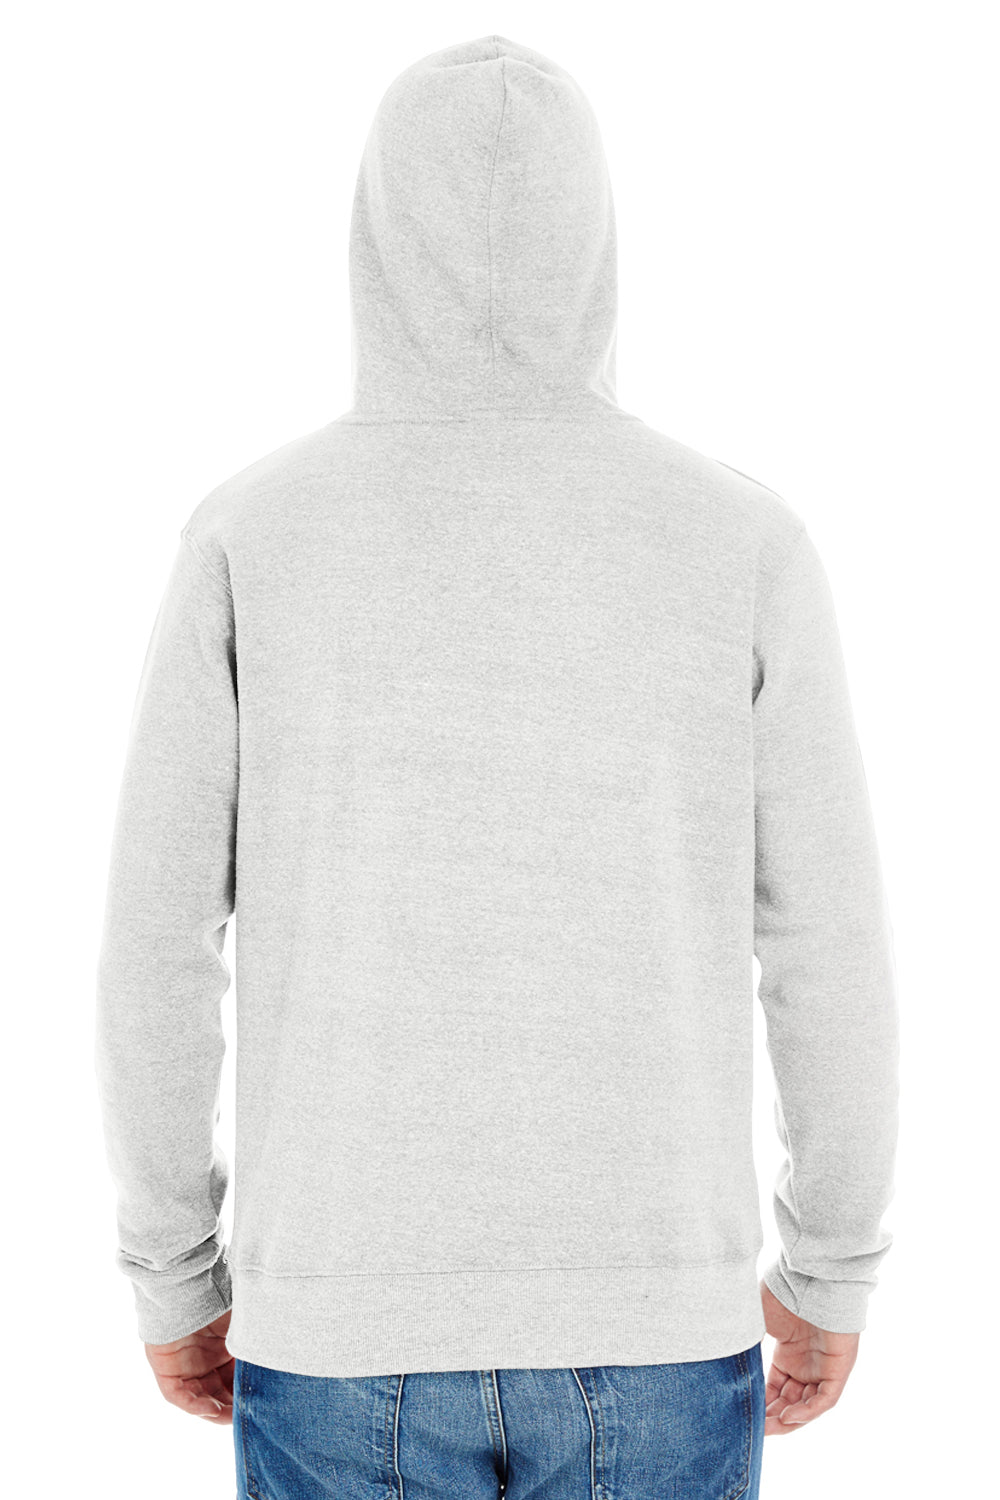 J America JA8871 Mens Fleece Hooded Sweatshirt Hoodie Antique White Back